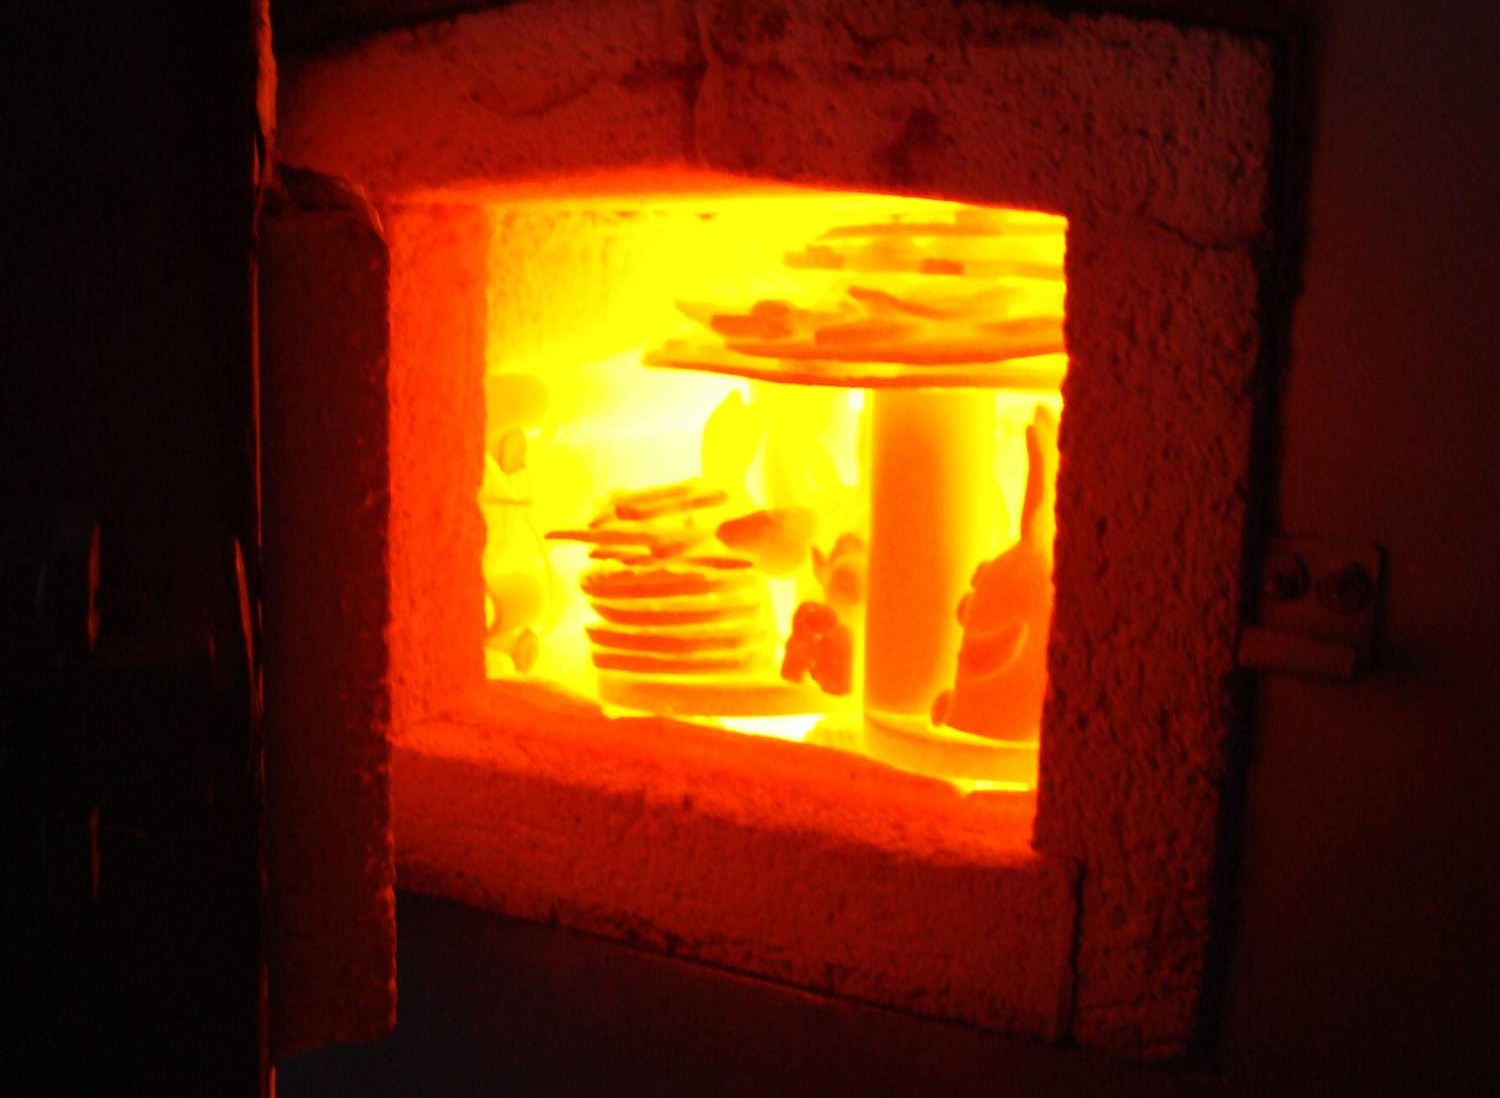 Муфельная печь для обжига керамики: обработка глины в высокотемпературном устройстве, сделанном своими руками